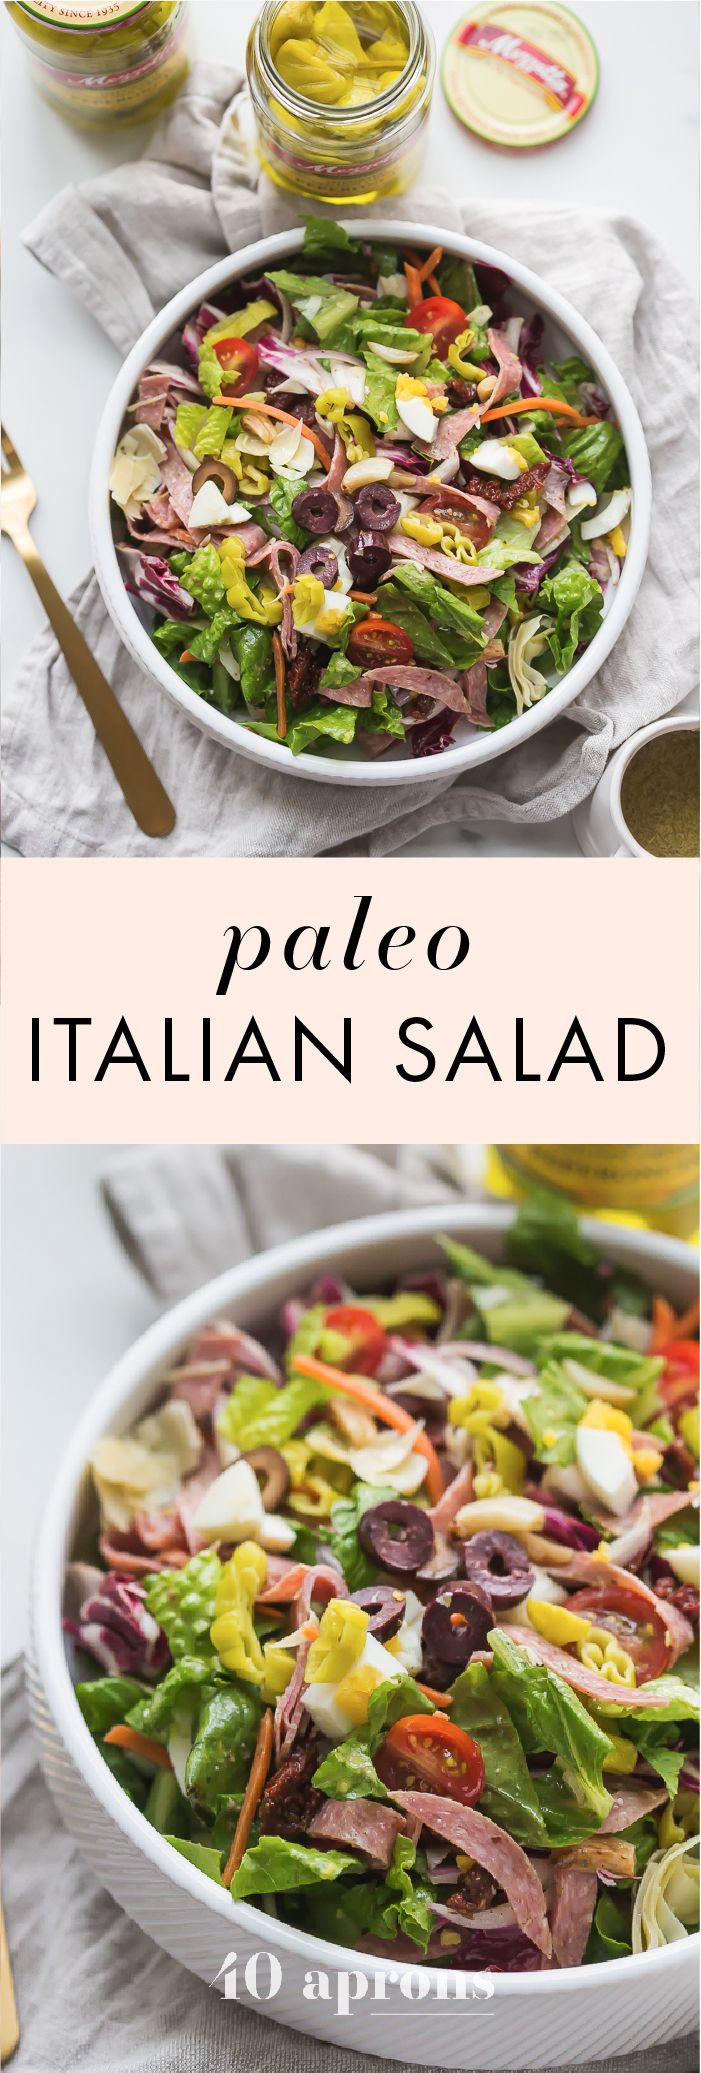 Paleo Italian Recipes
 Paleo Italian Salad Recipe